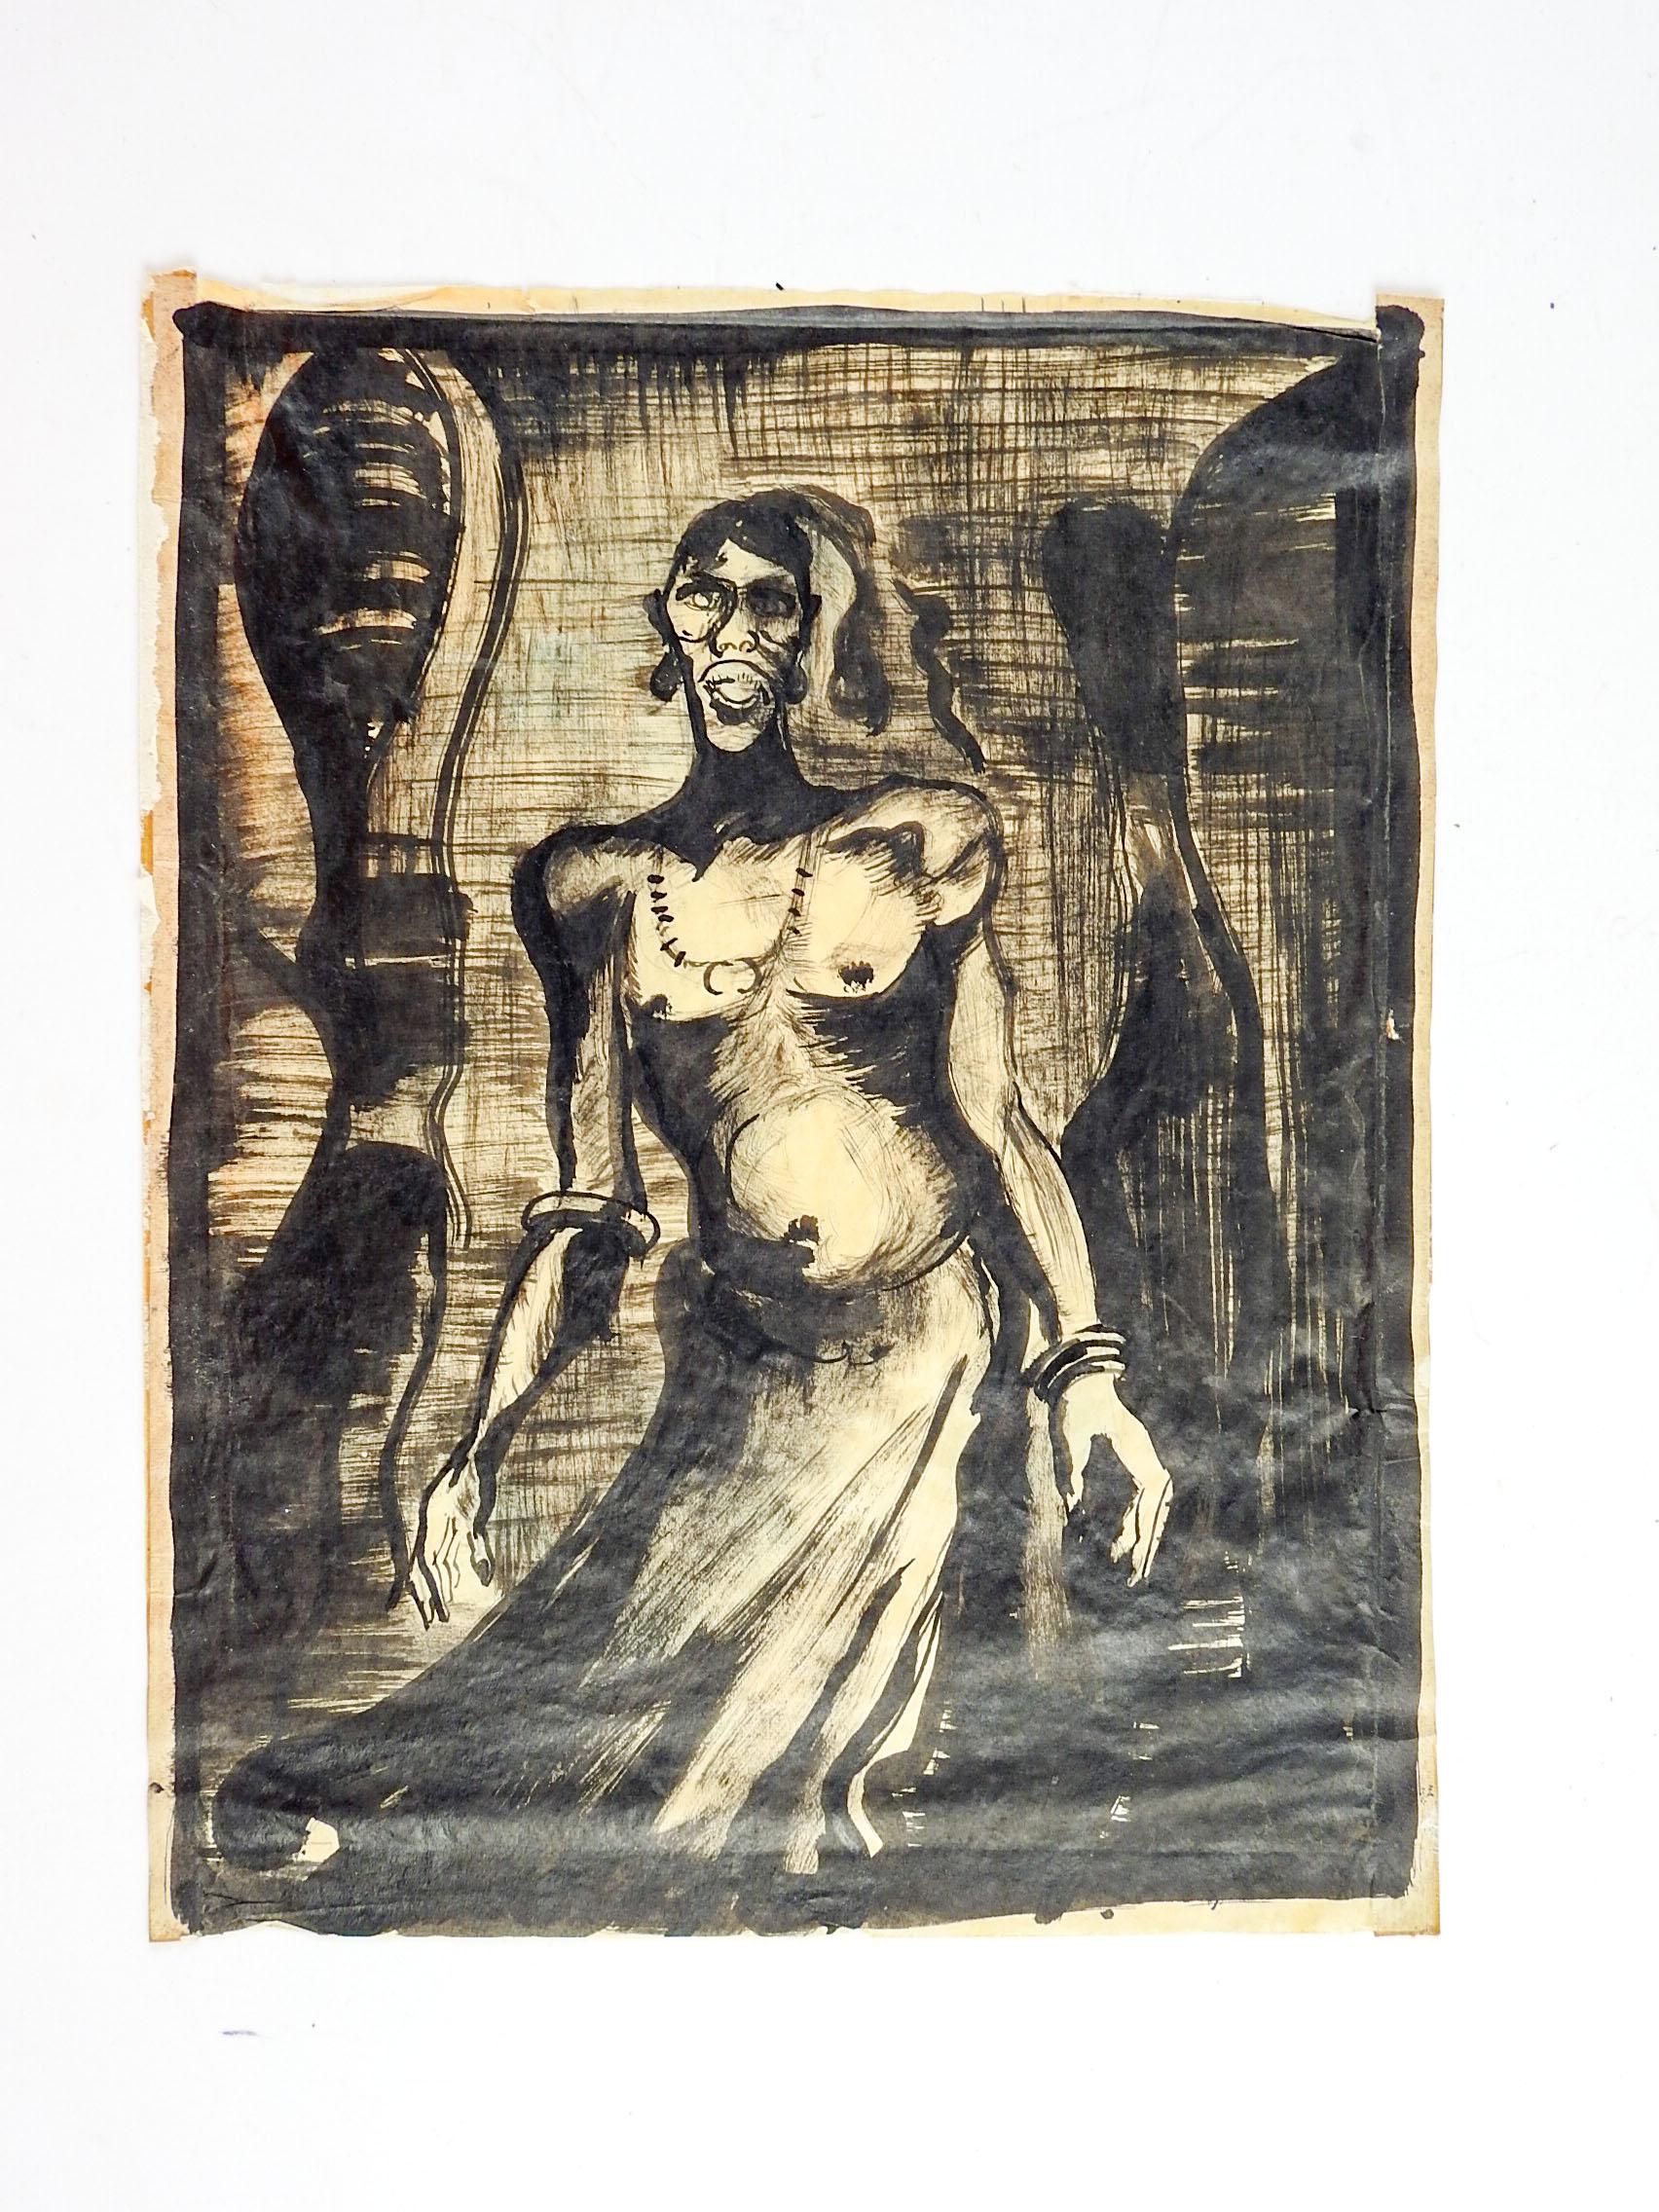 CIRCA 1930's starke Tinte waschen auf dünnem Papier Studie der afrikanischen Mann. Unsigniert, wahrscheinlich von einem afroamerikanischen Künstler ausgeführt, basierend auf den anderen Werken aus dem Nachlass. Alterstönung, Klebebandreste an den